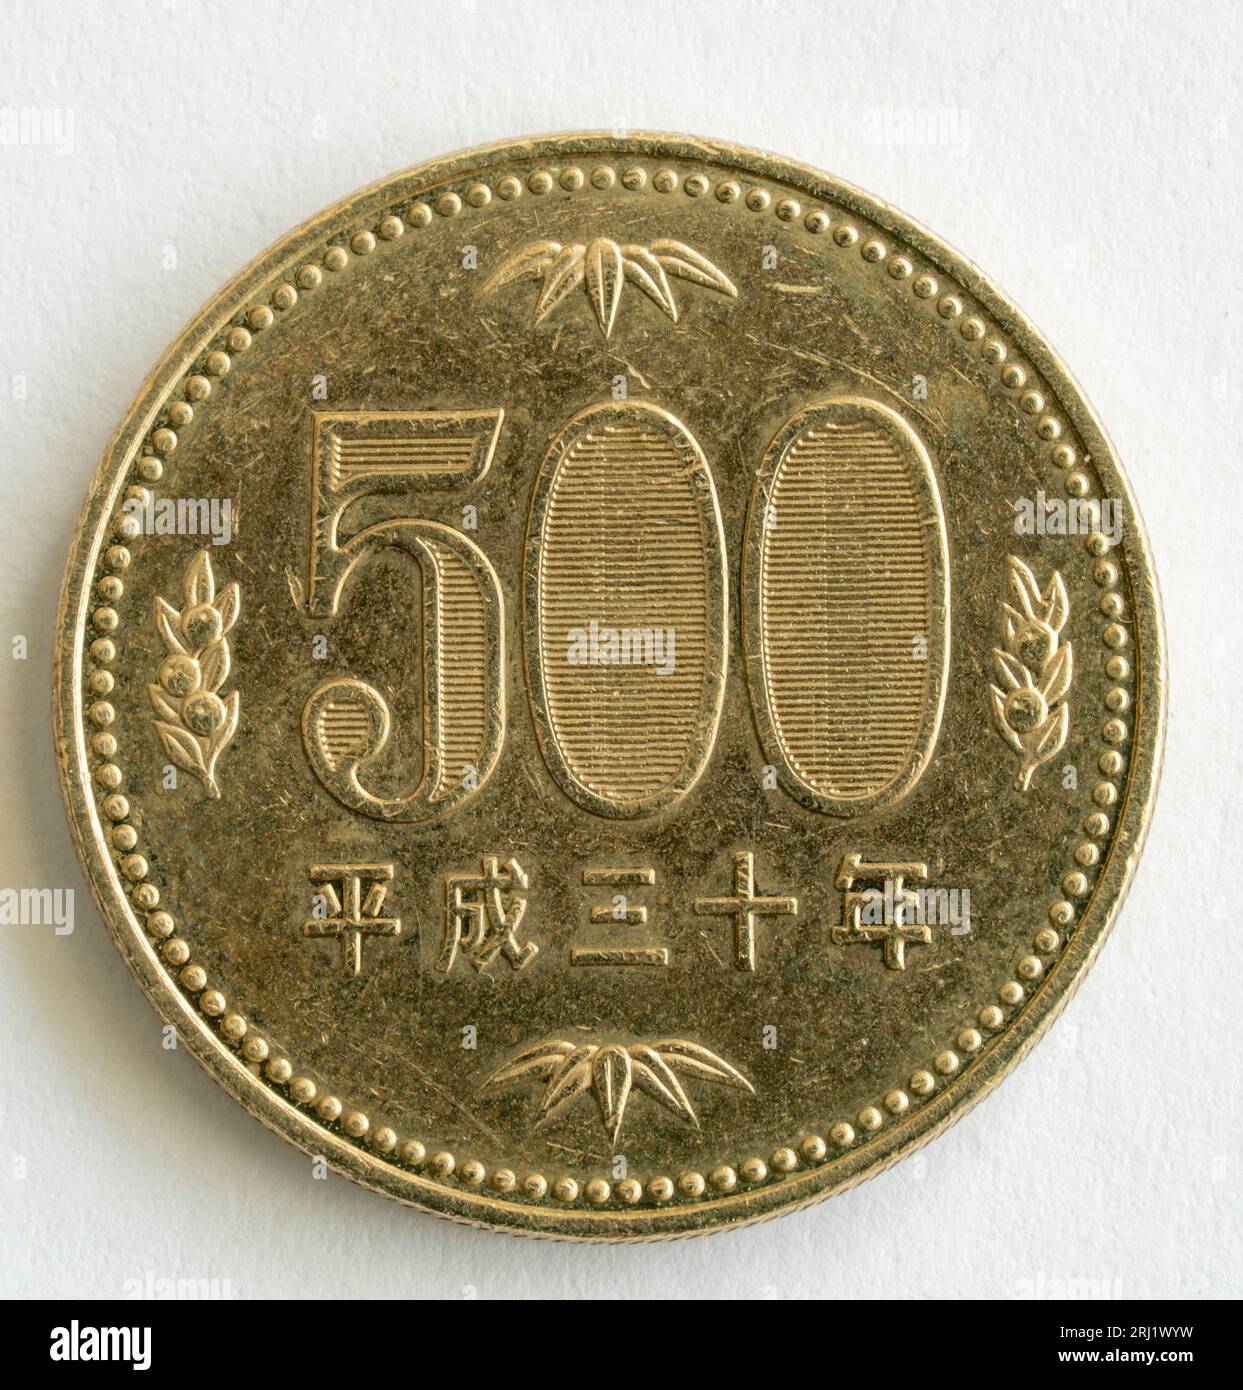 Pièce japonaise de 500 yens frappée pour l'empereur Showa, Hirohito. Il a la valeur avec des oranges mandarines sur les côtés et des feuilles de bambou au-dessus et en dessous. Banque D'Images